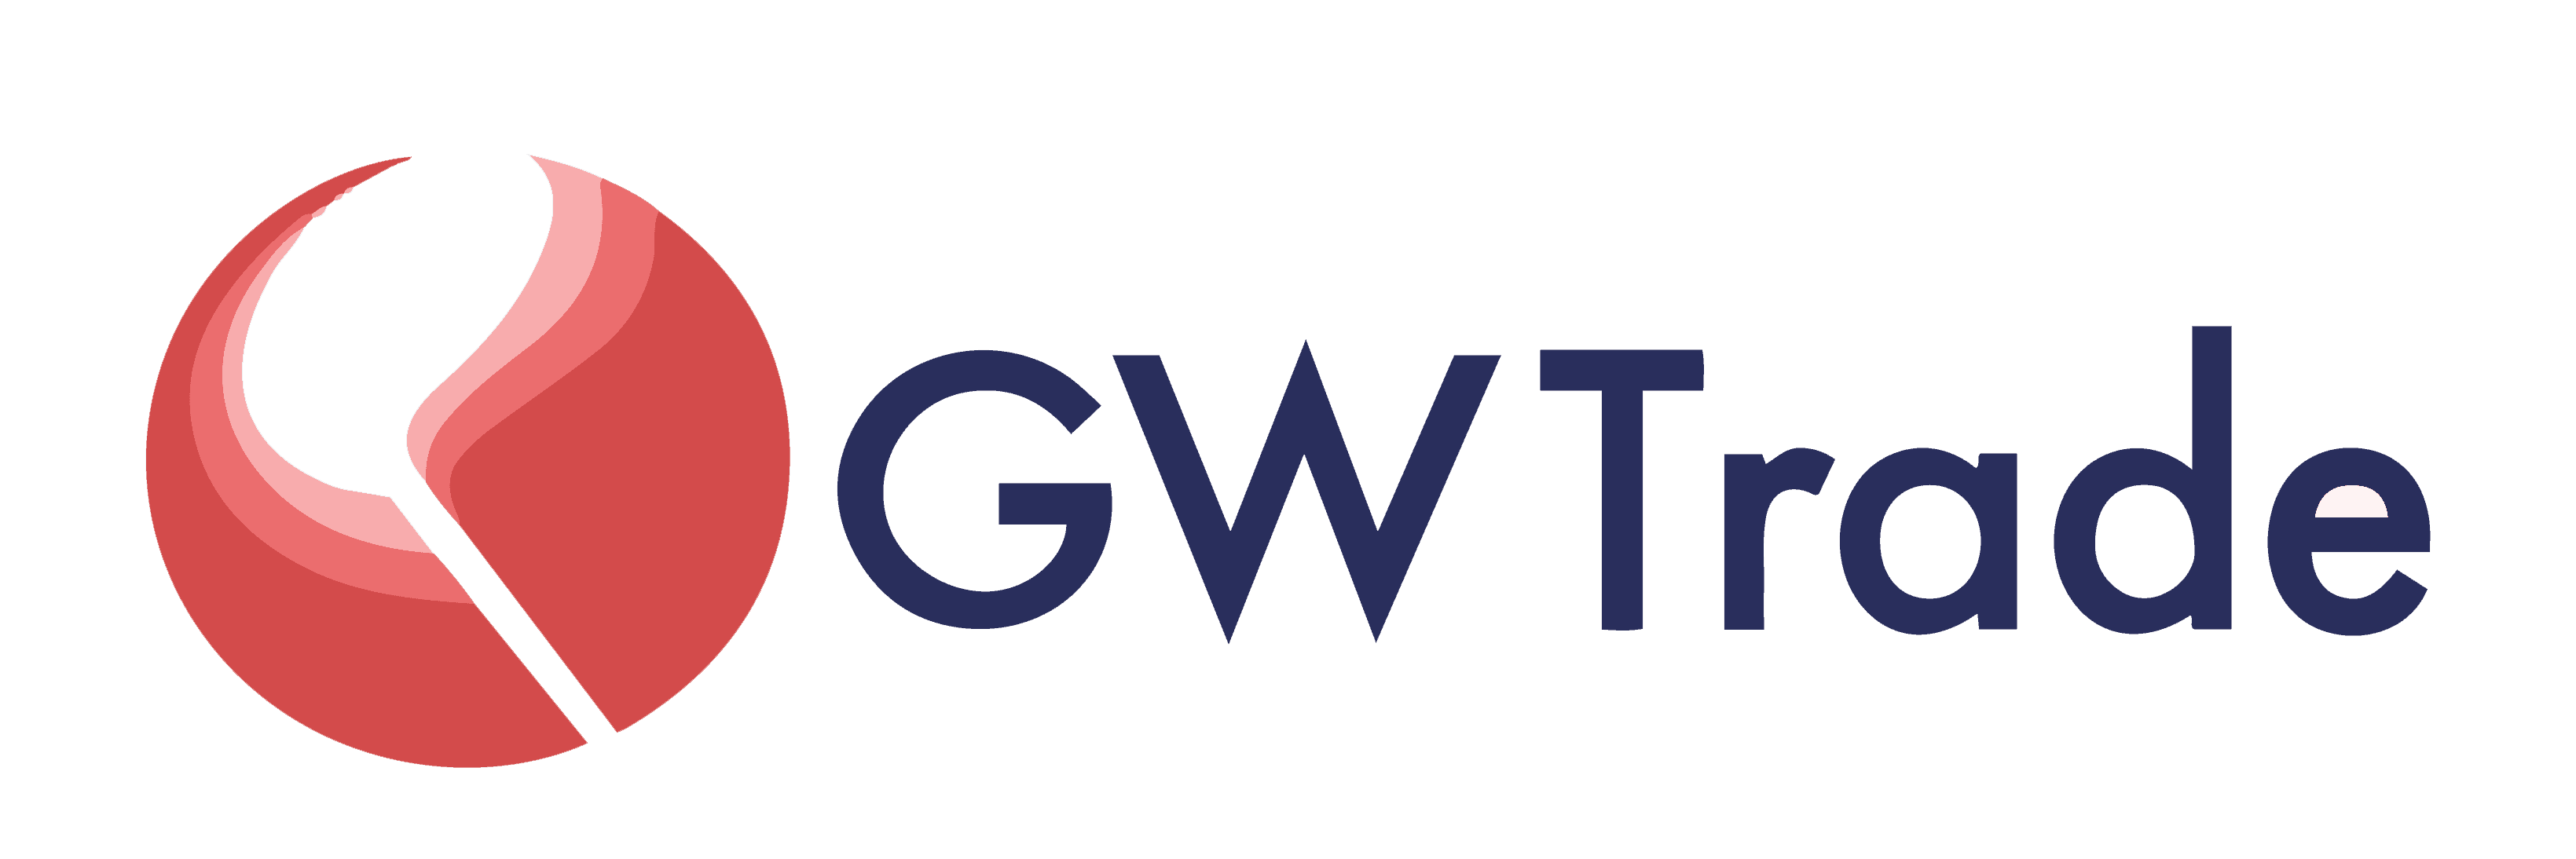 GWTrade